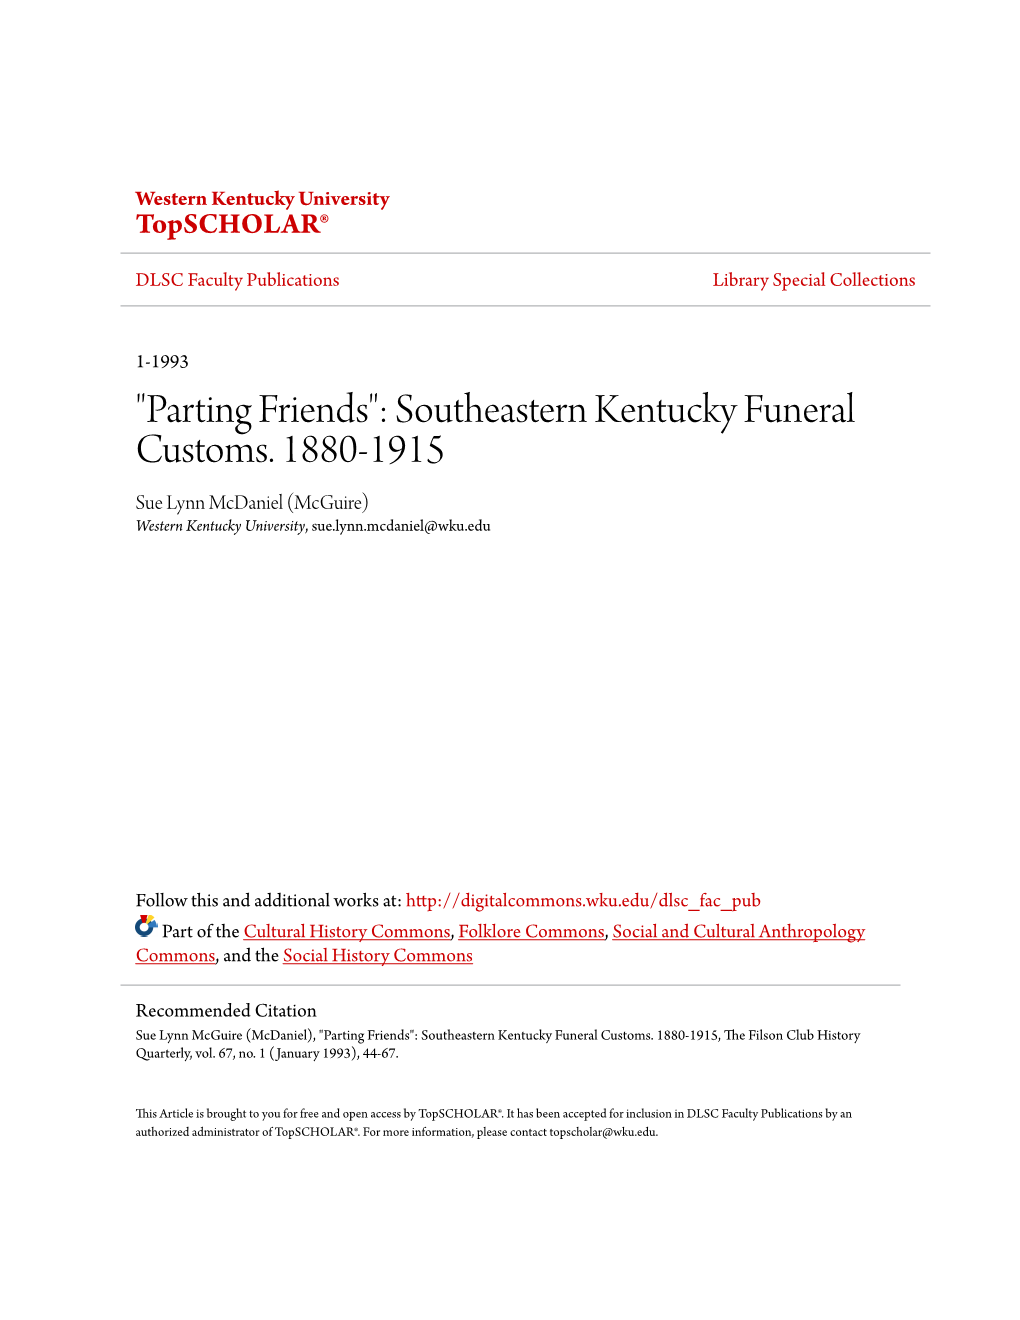 Southeastern Kentucky Funeral Customs. 1880-1915 Sue Lynn Mcdaniel (Mcguire) Western Kentucky University, Sue.Lynn.Mcdaniel@Wku.Edu